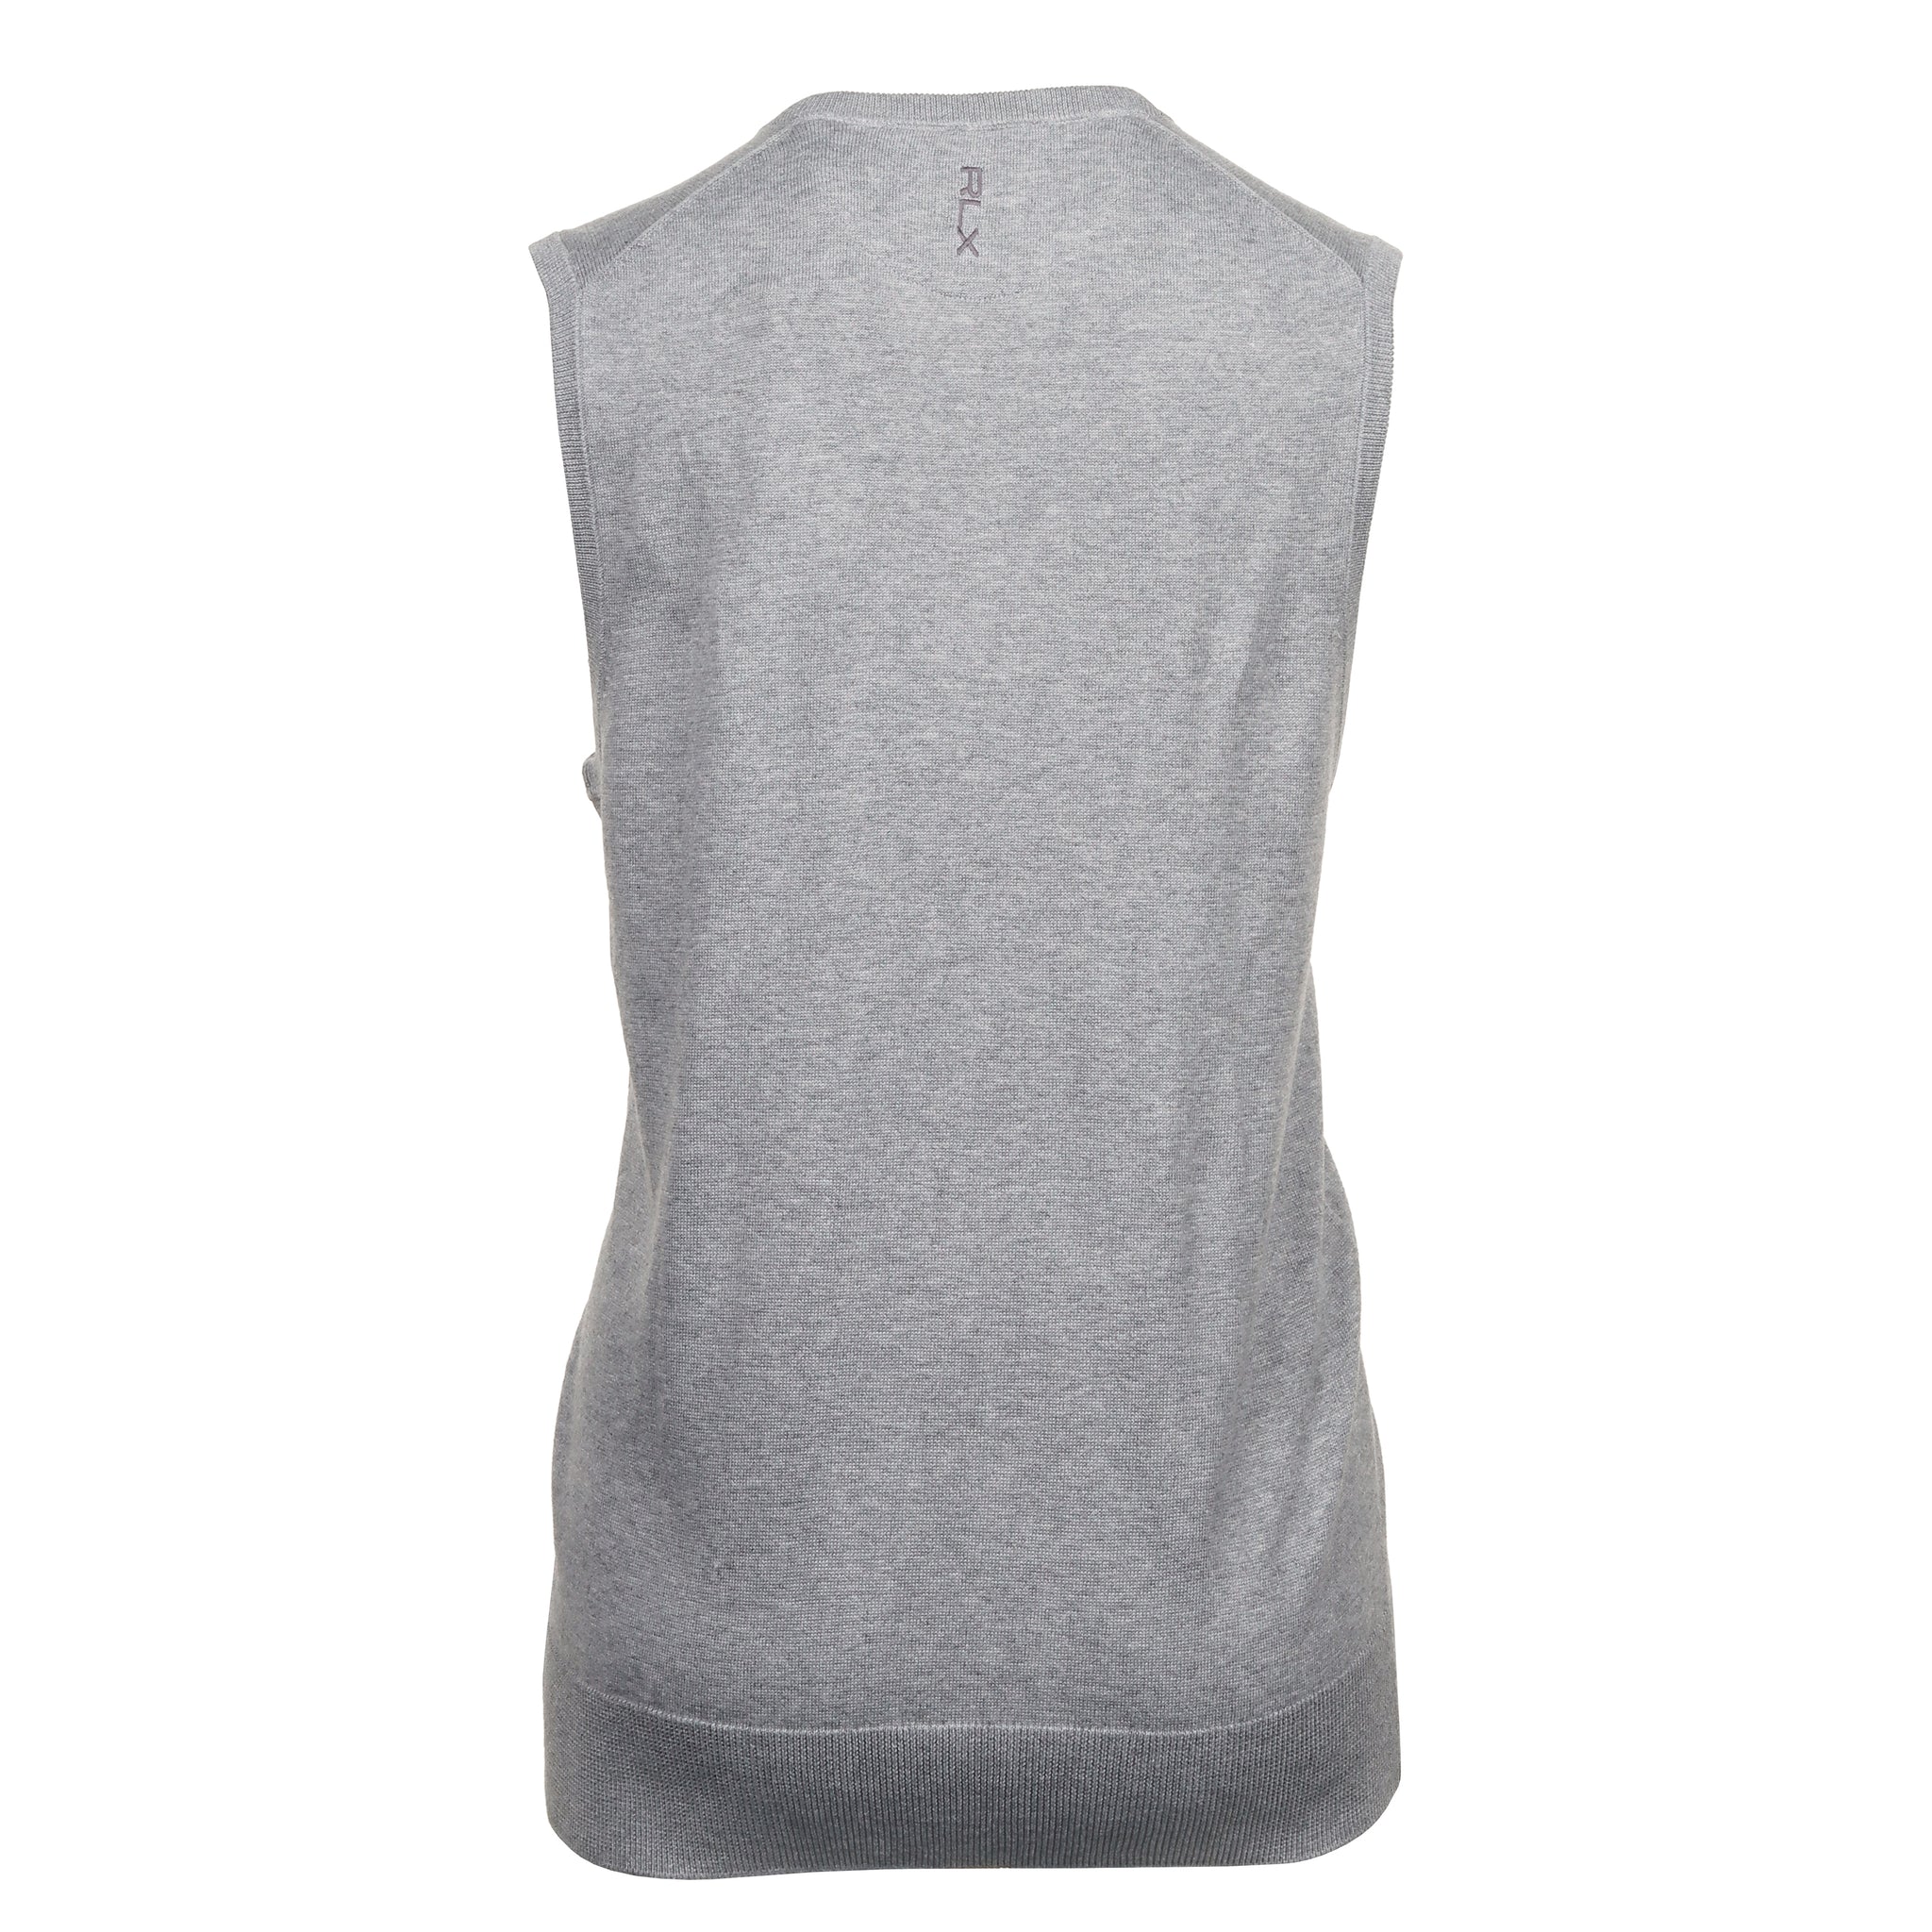 rlx-ralph-lauren-sweater-v-neck-vest-785931318-andover-heather-002